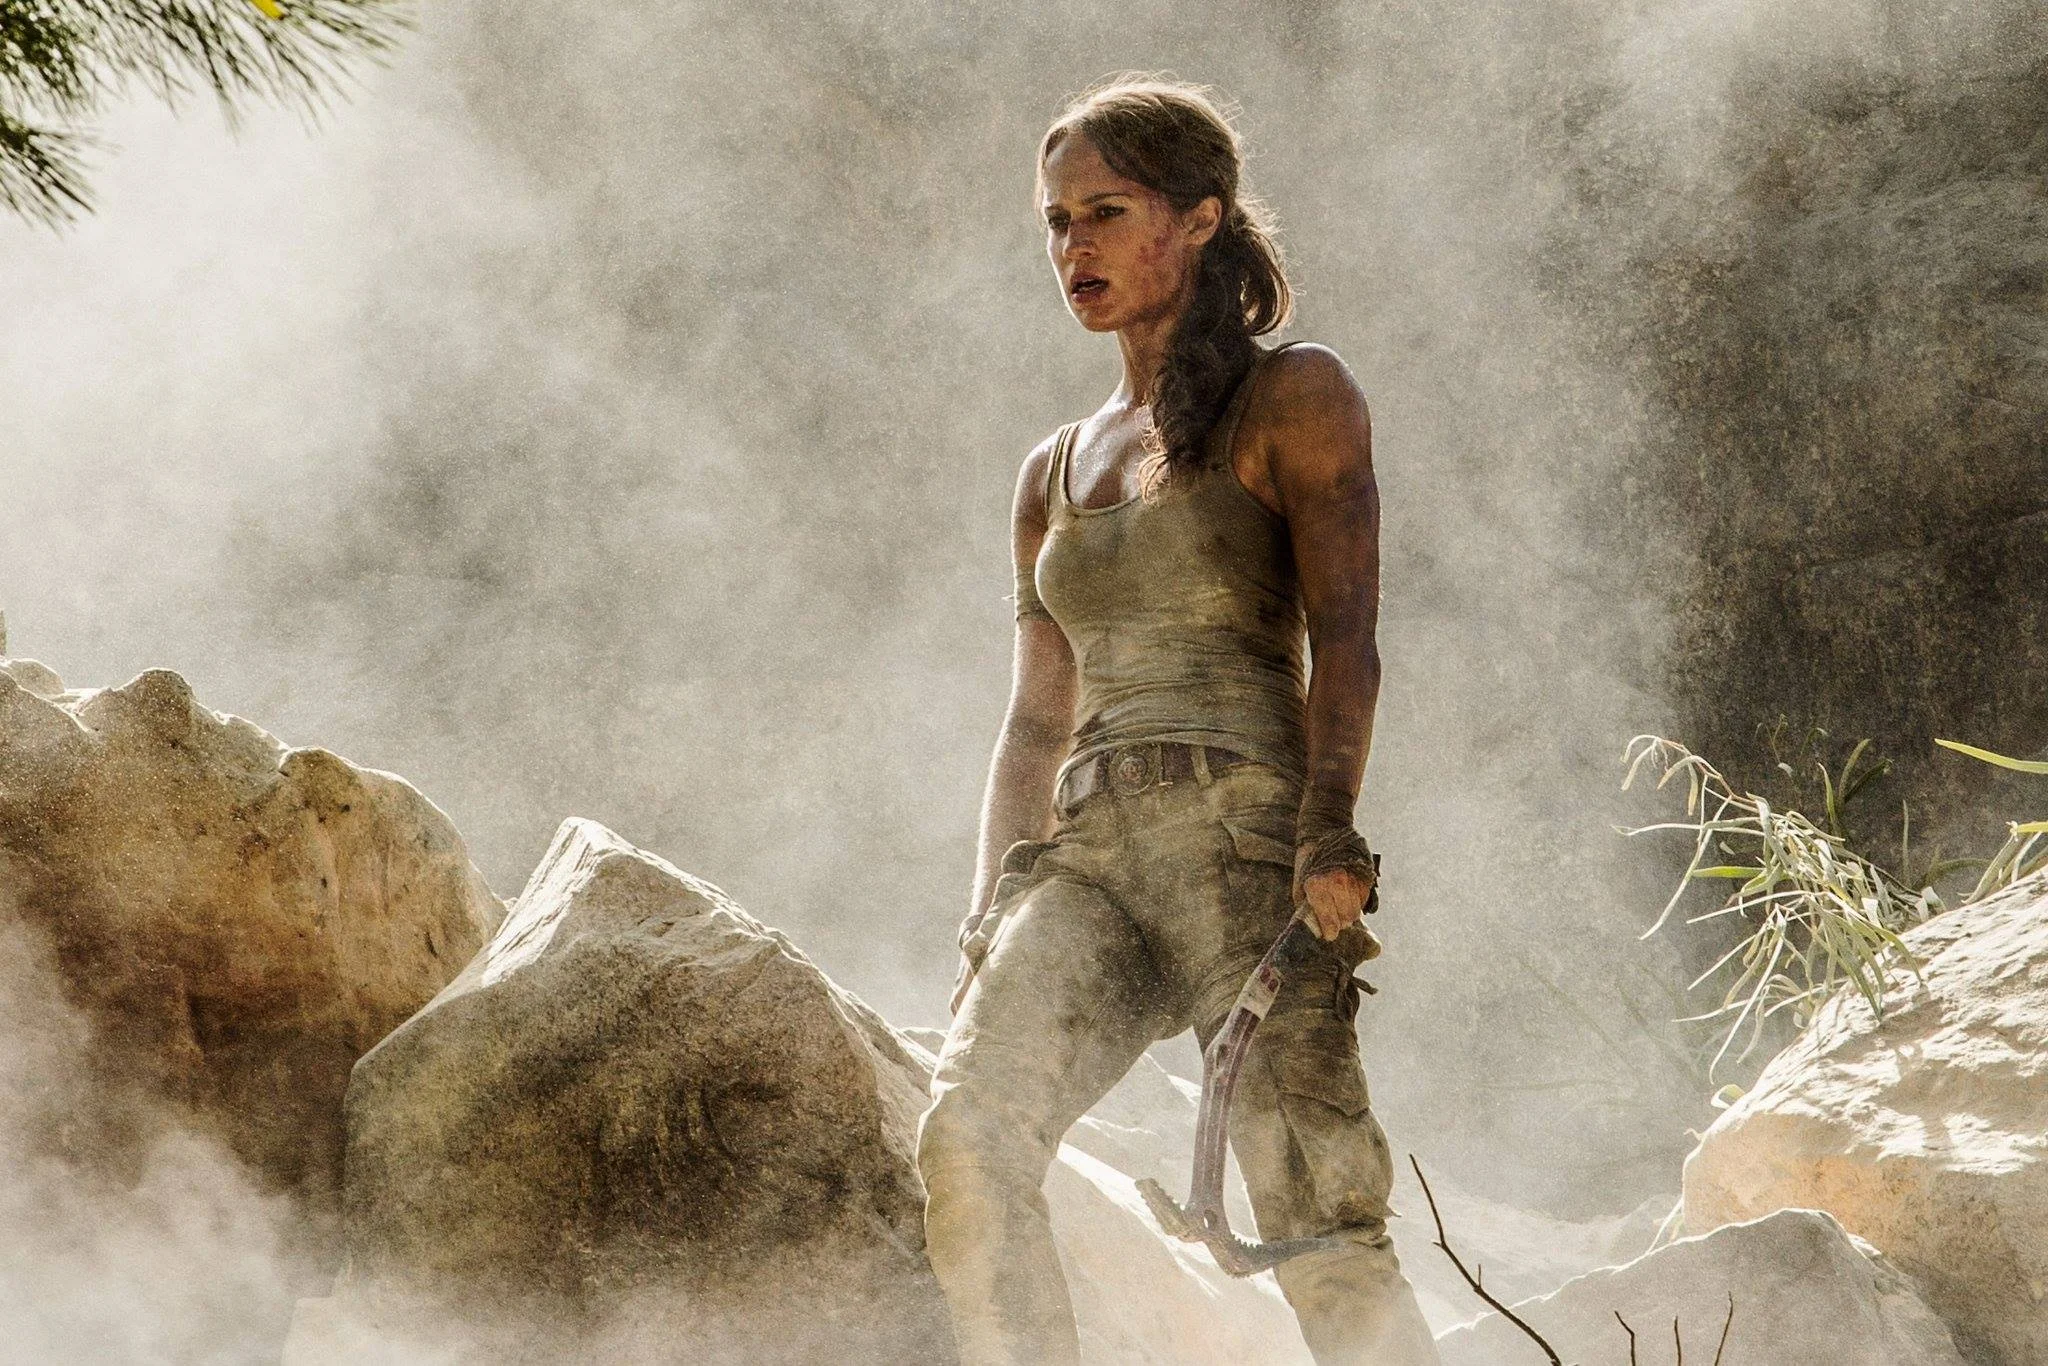 15 марта в кино выходит перезапуск франшизы про Лару Крофт — фильм «Tomb Raider: Лара Крофт». На смену американке Анджелине Джоли пришла шведка Алисия Викандер. По первому трейлеру перезапуска многие решили, что Алисия на эту роль не годится. Но мне уже удалось посмотреть картину — и на мой взгляд, Алисия сыграла отлично. Это лучшее, что есть в новом фильме.